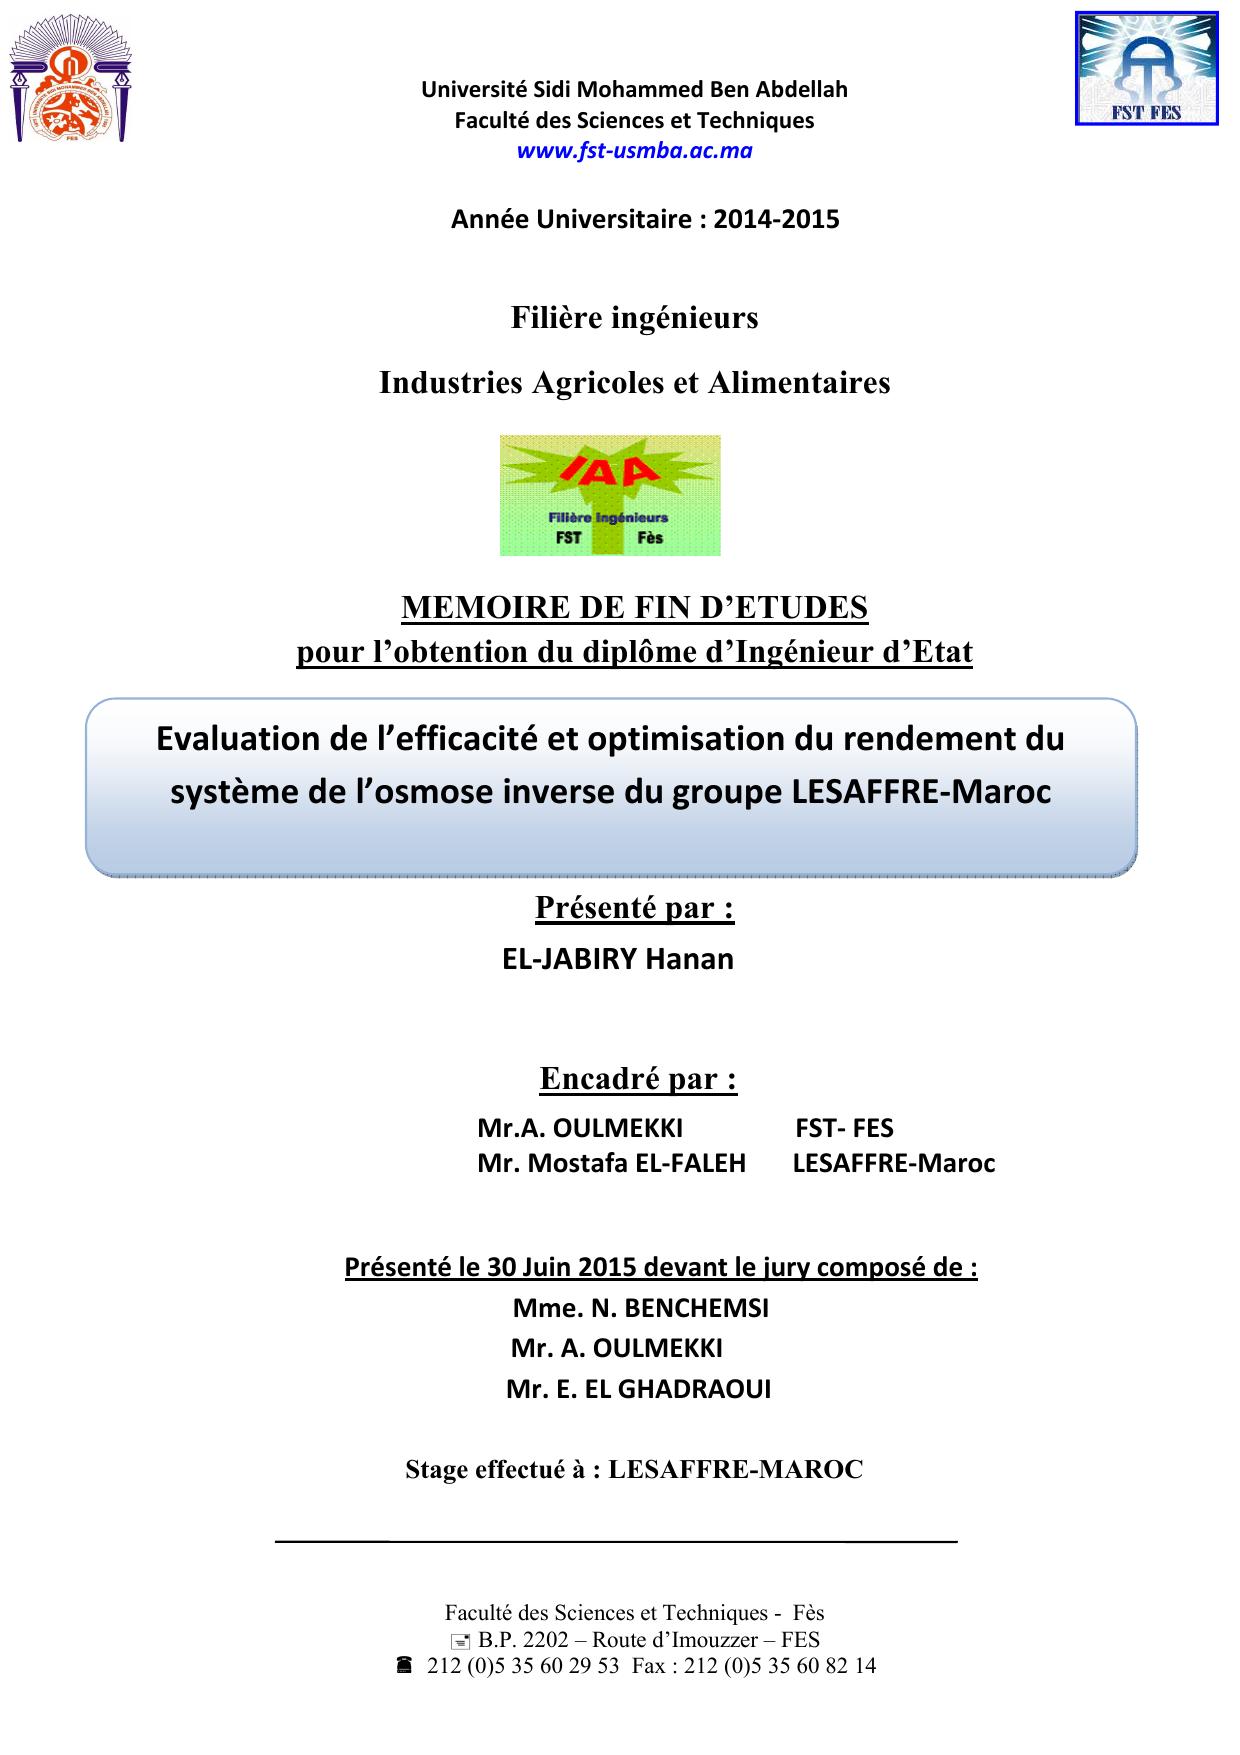 Evaluation de l’efficacité et optimisation du rendement du système de l’osmose inverse du groupe LESAFFRE-Maroc